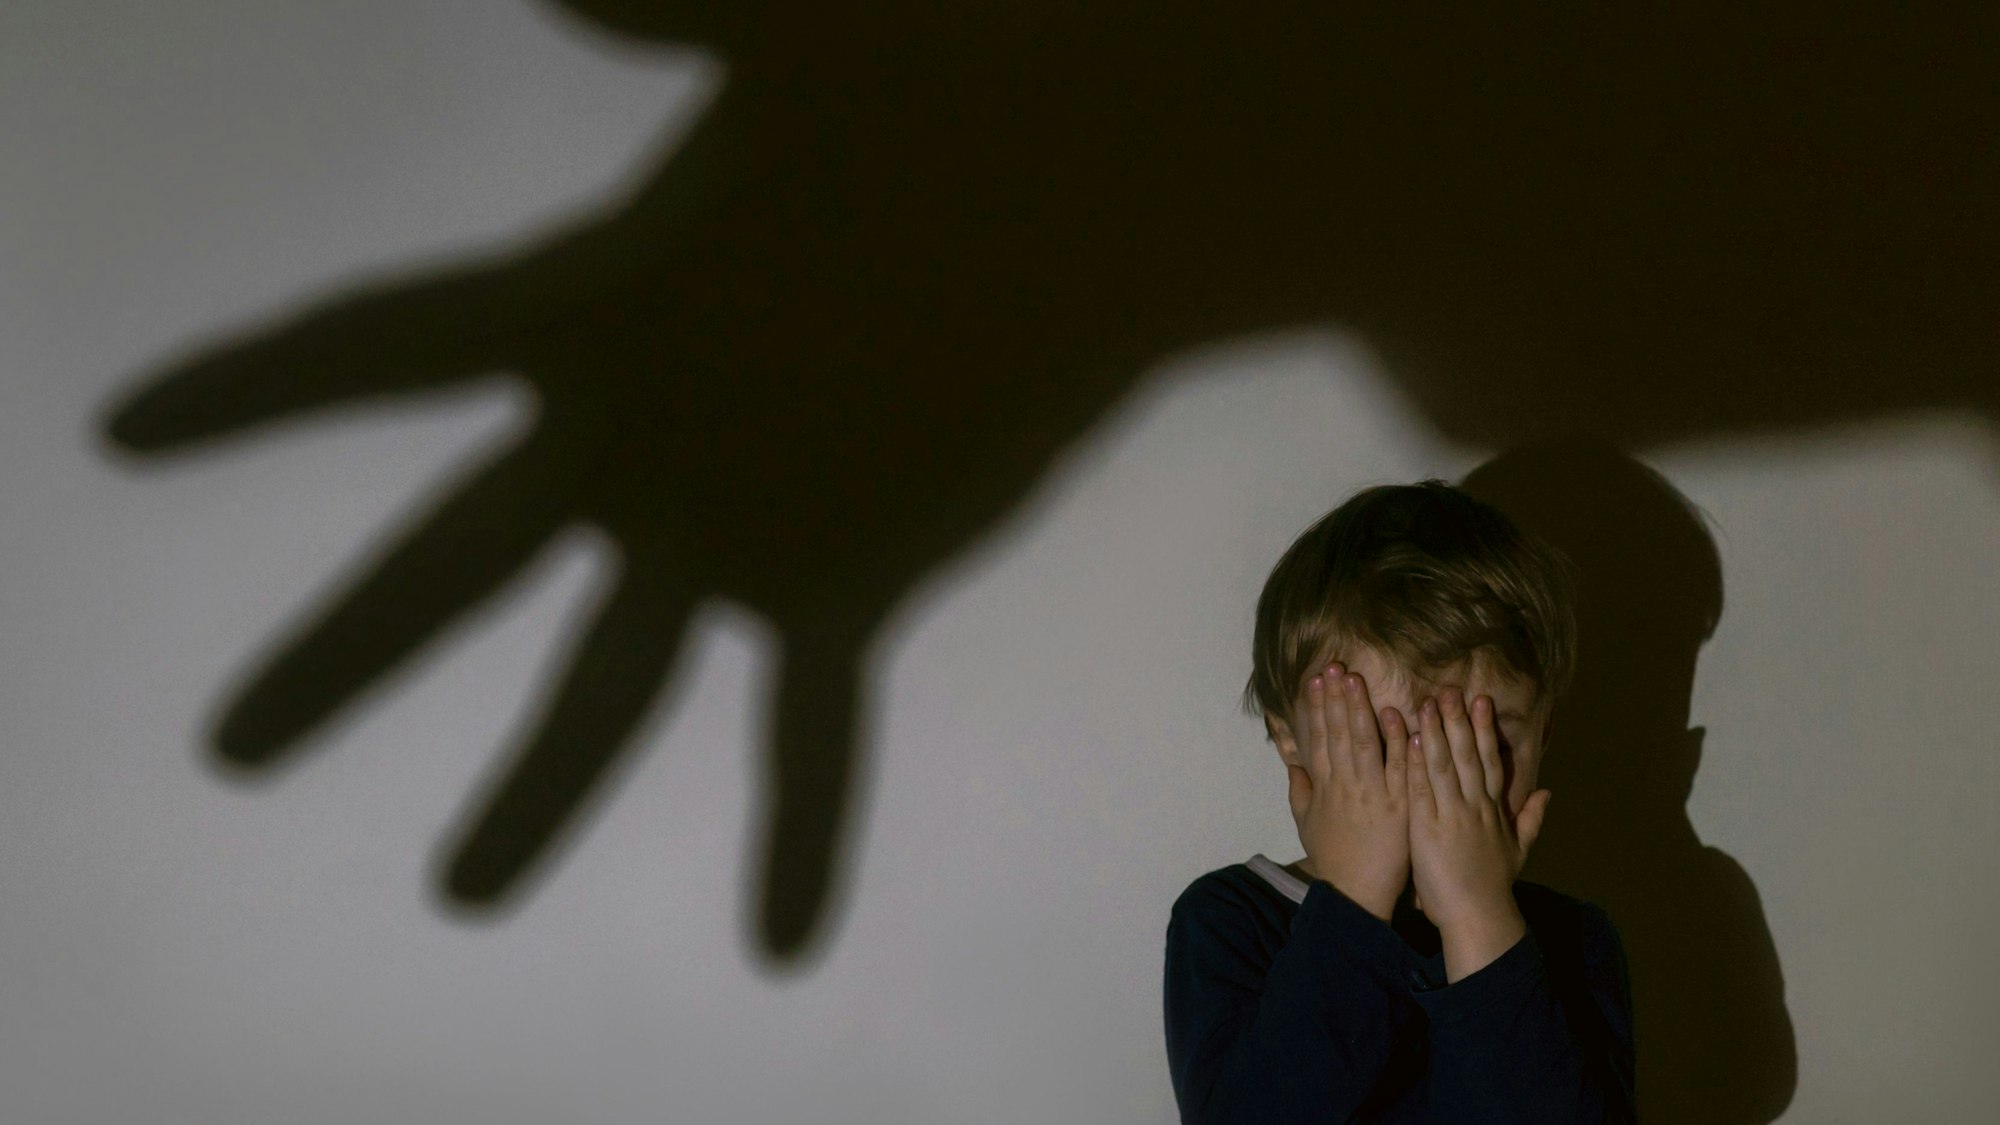 Ein kleiner Junge sitzt vor einer Wand und hält vor Schrecken seine Hände vors Gesicht. An der Wand ist ein großer Schatten einer ausgestreckten Hand zu sehen.